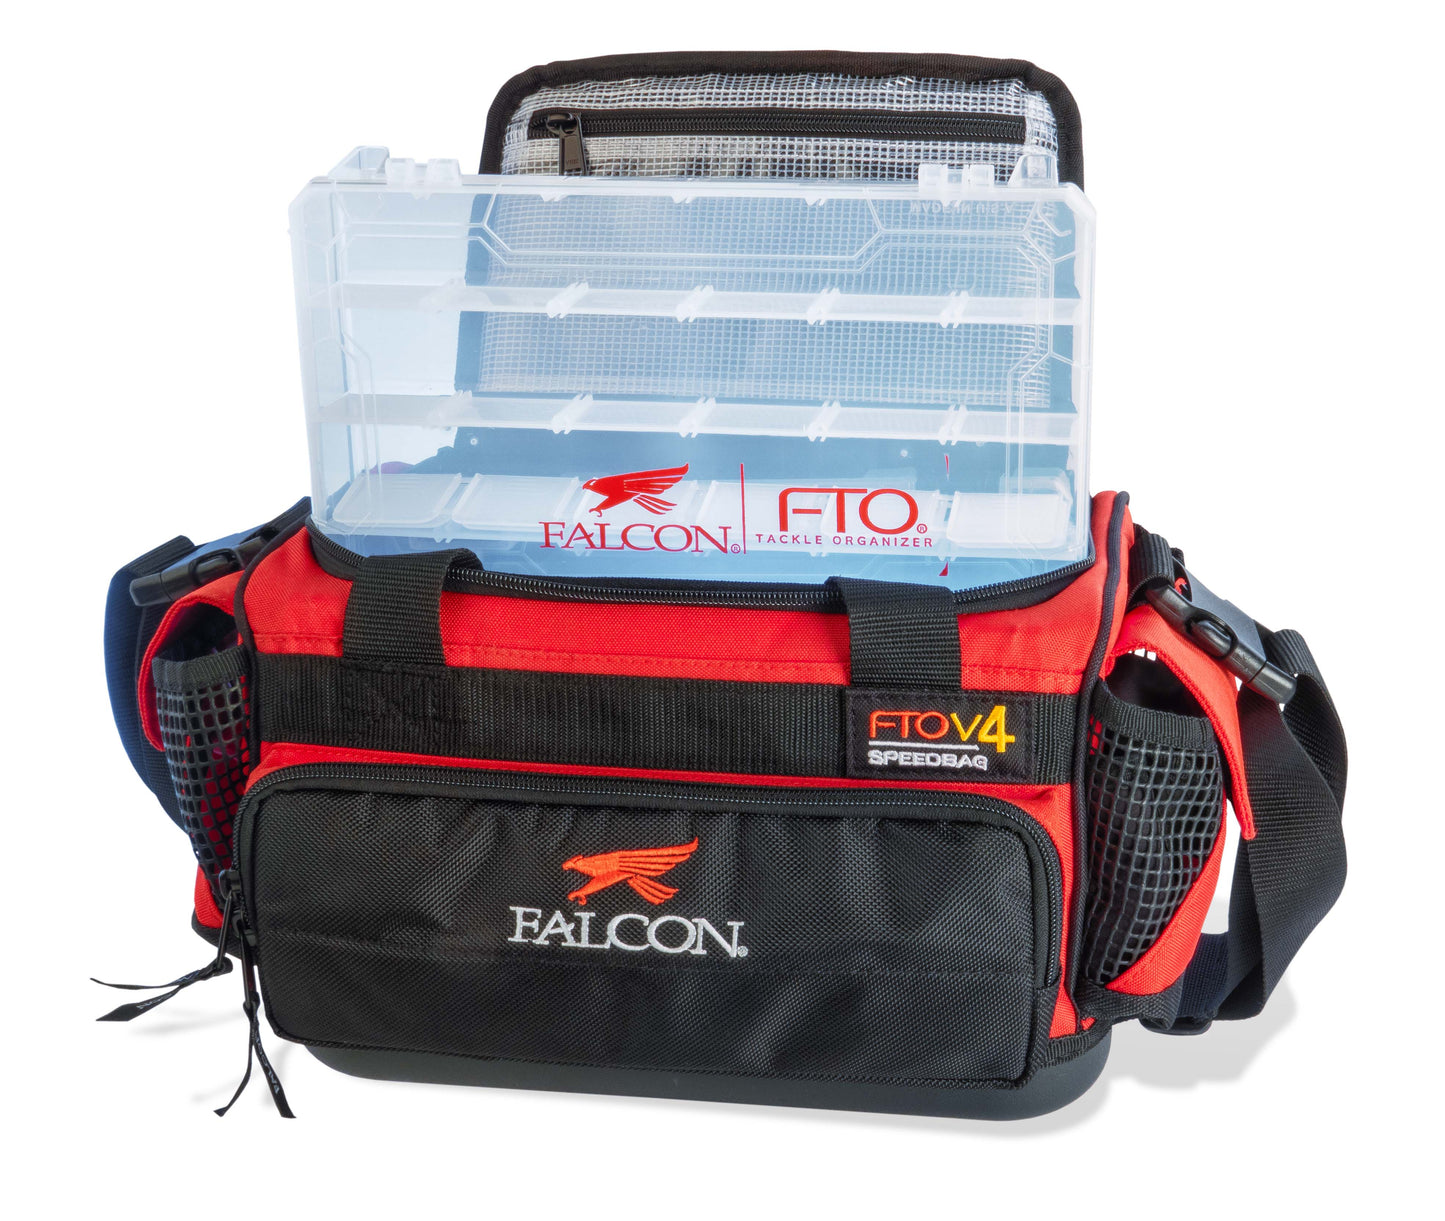 Falcon FTO V4 Speedbag Bag Loaded